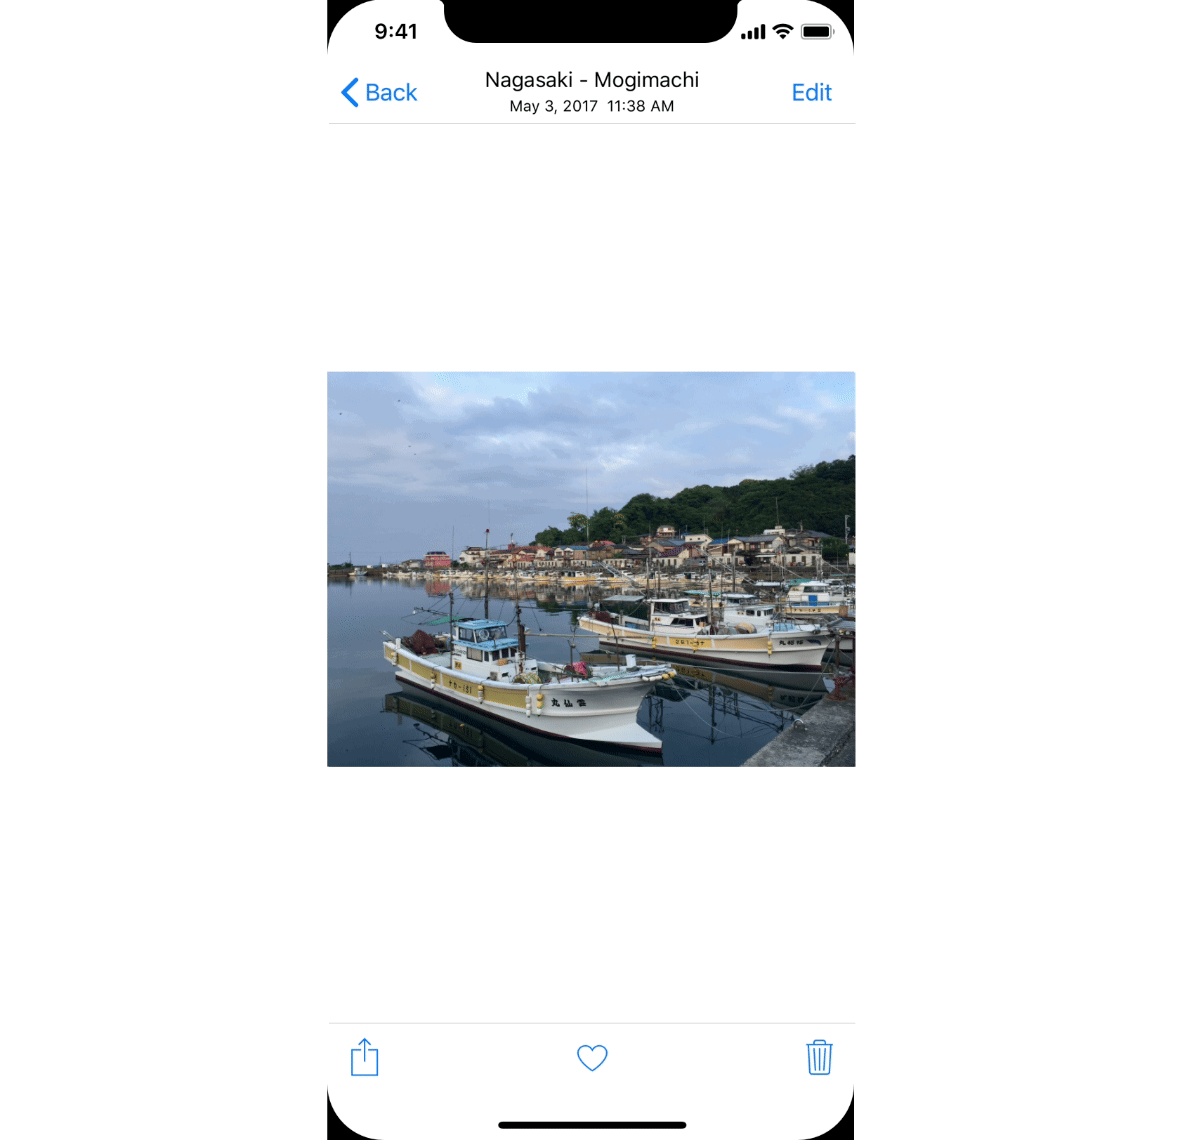 iOS 13 Concepto Siri Extremadamente ÚTIL 4